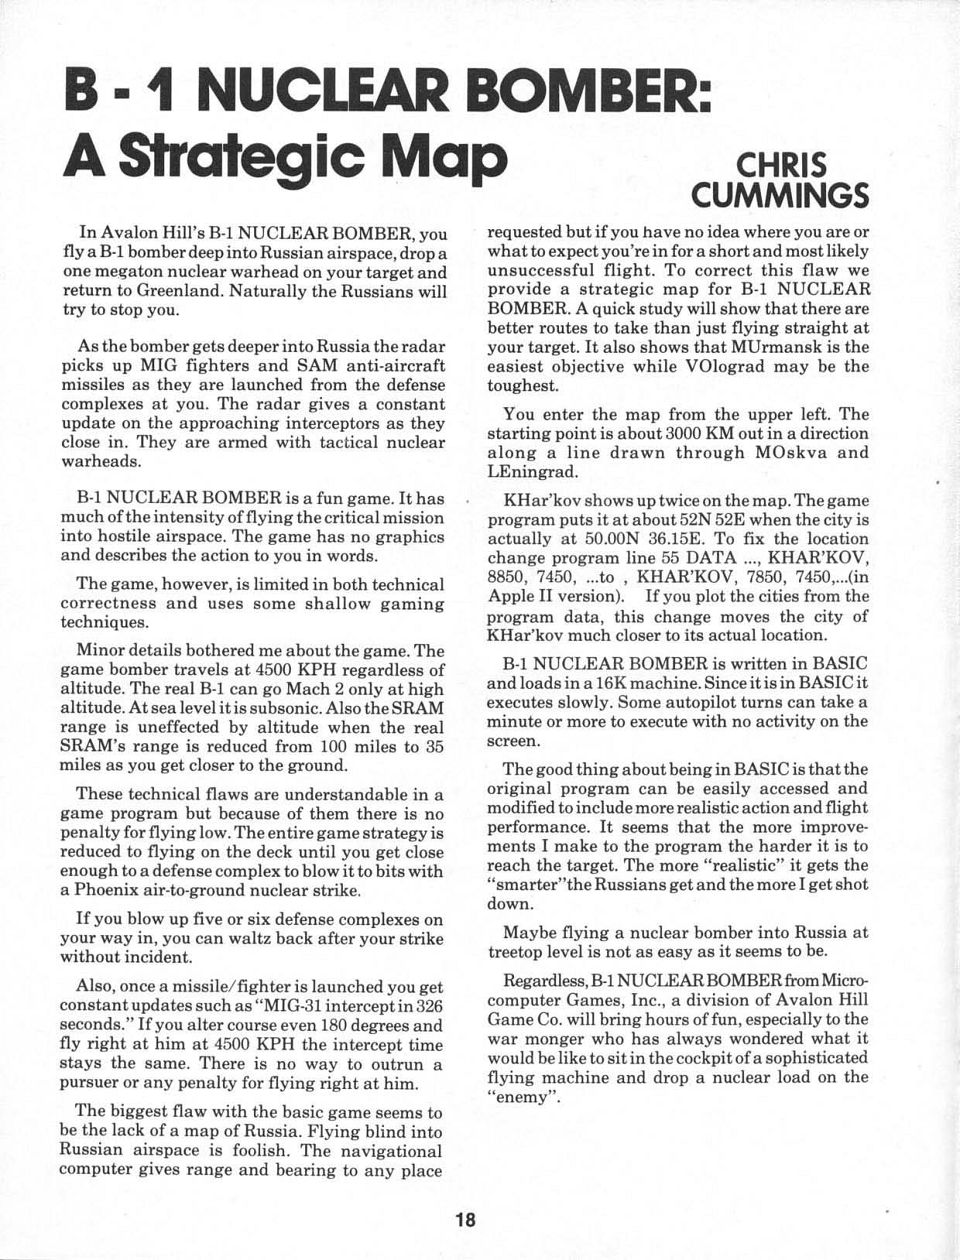 B-1 Nuclear Bomner: A Strategic Map